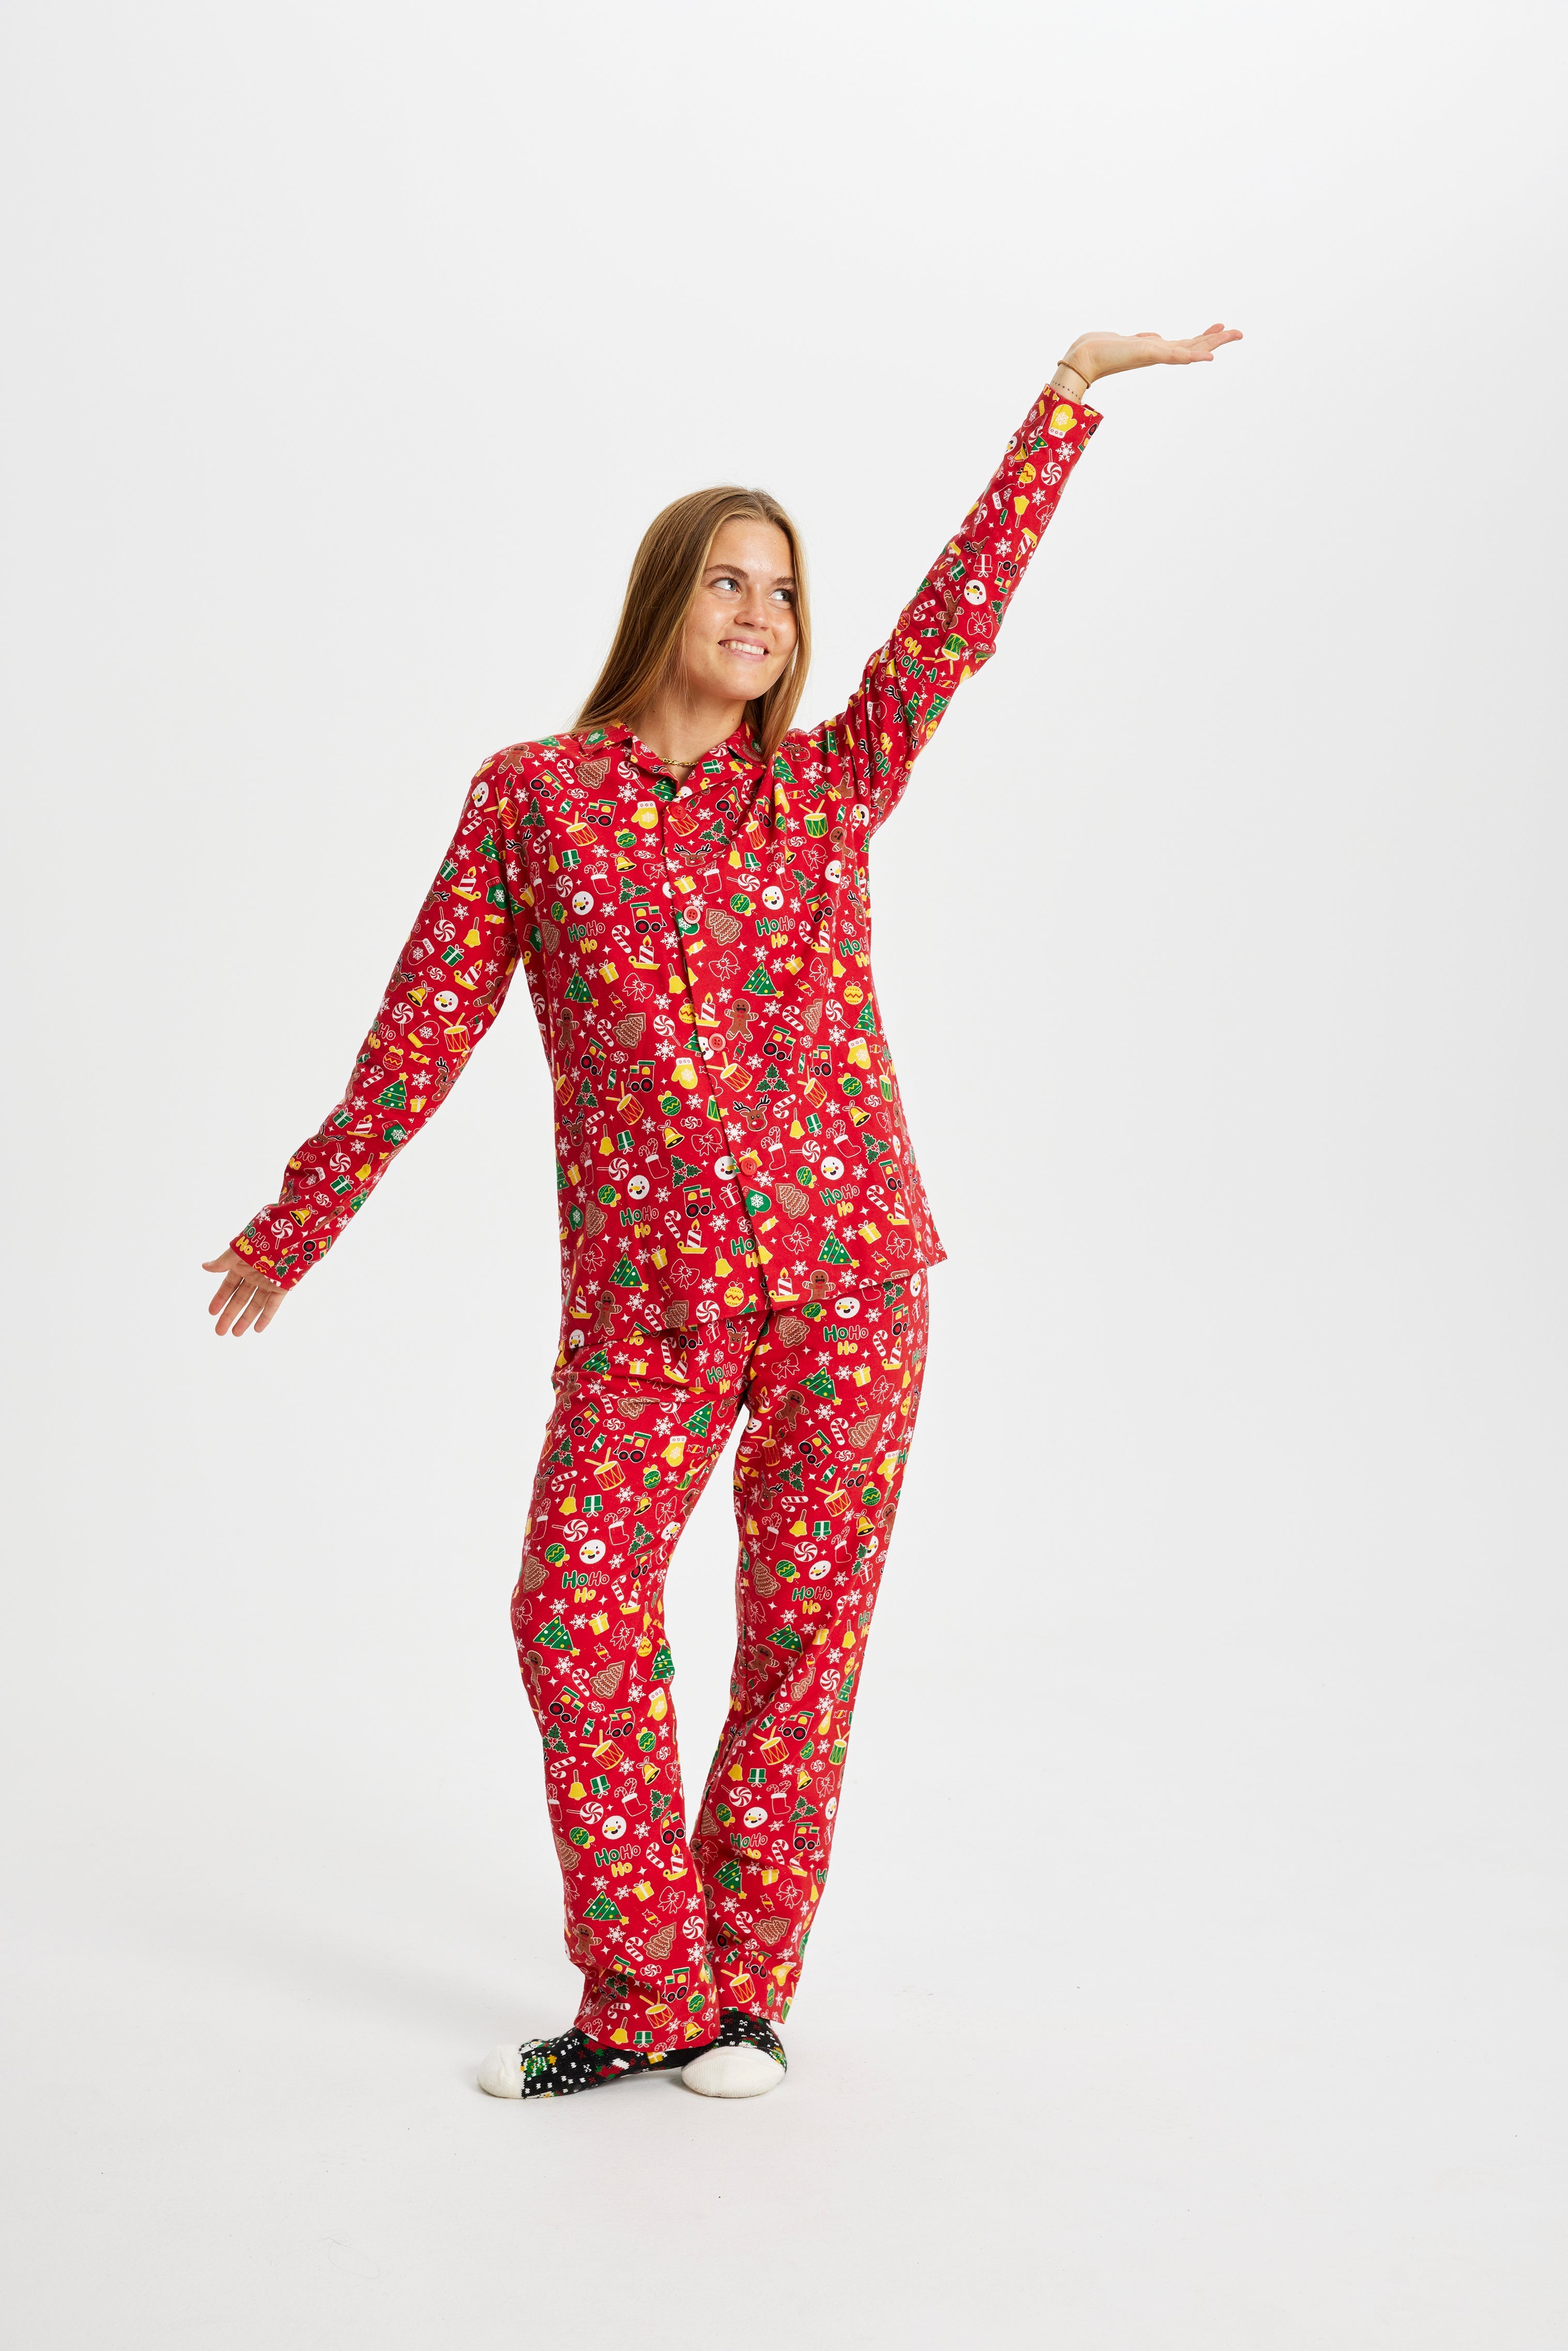 Billede af Crazy Julepyjamas Flannel Rød - dame / kvinder.